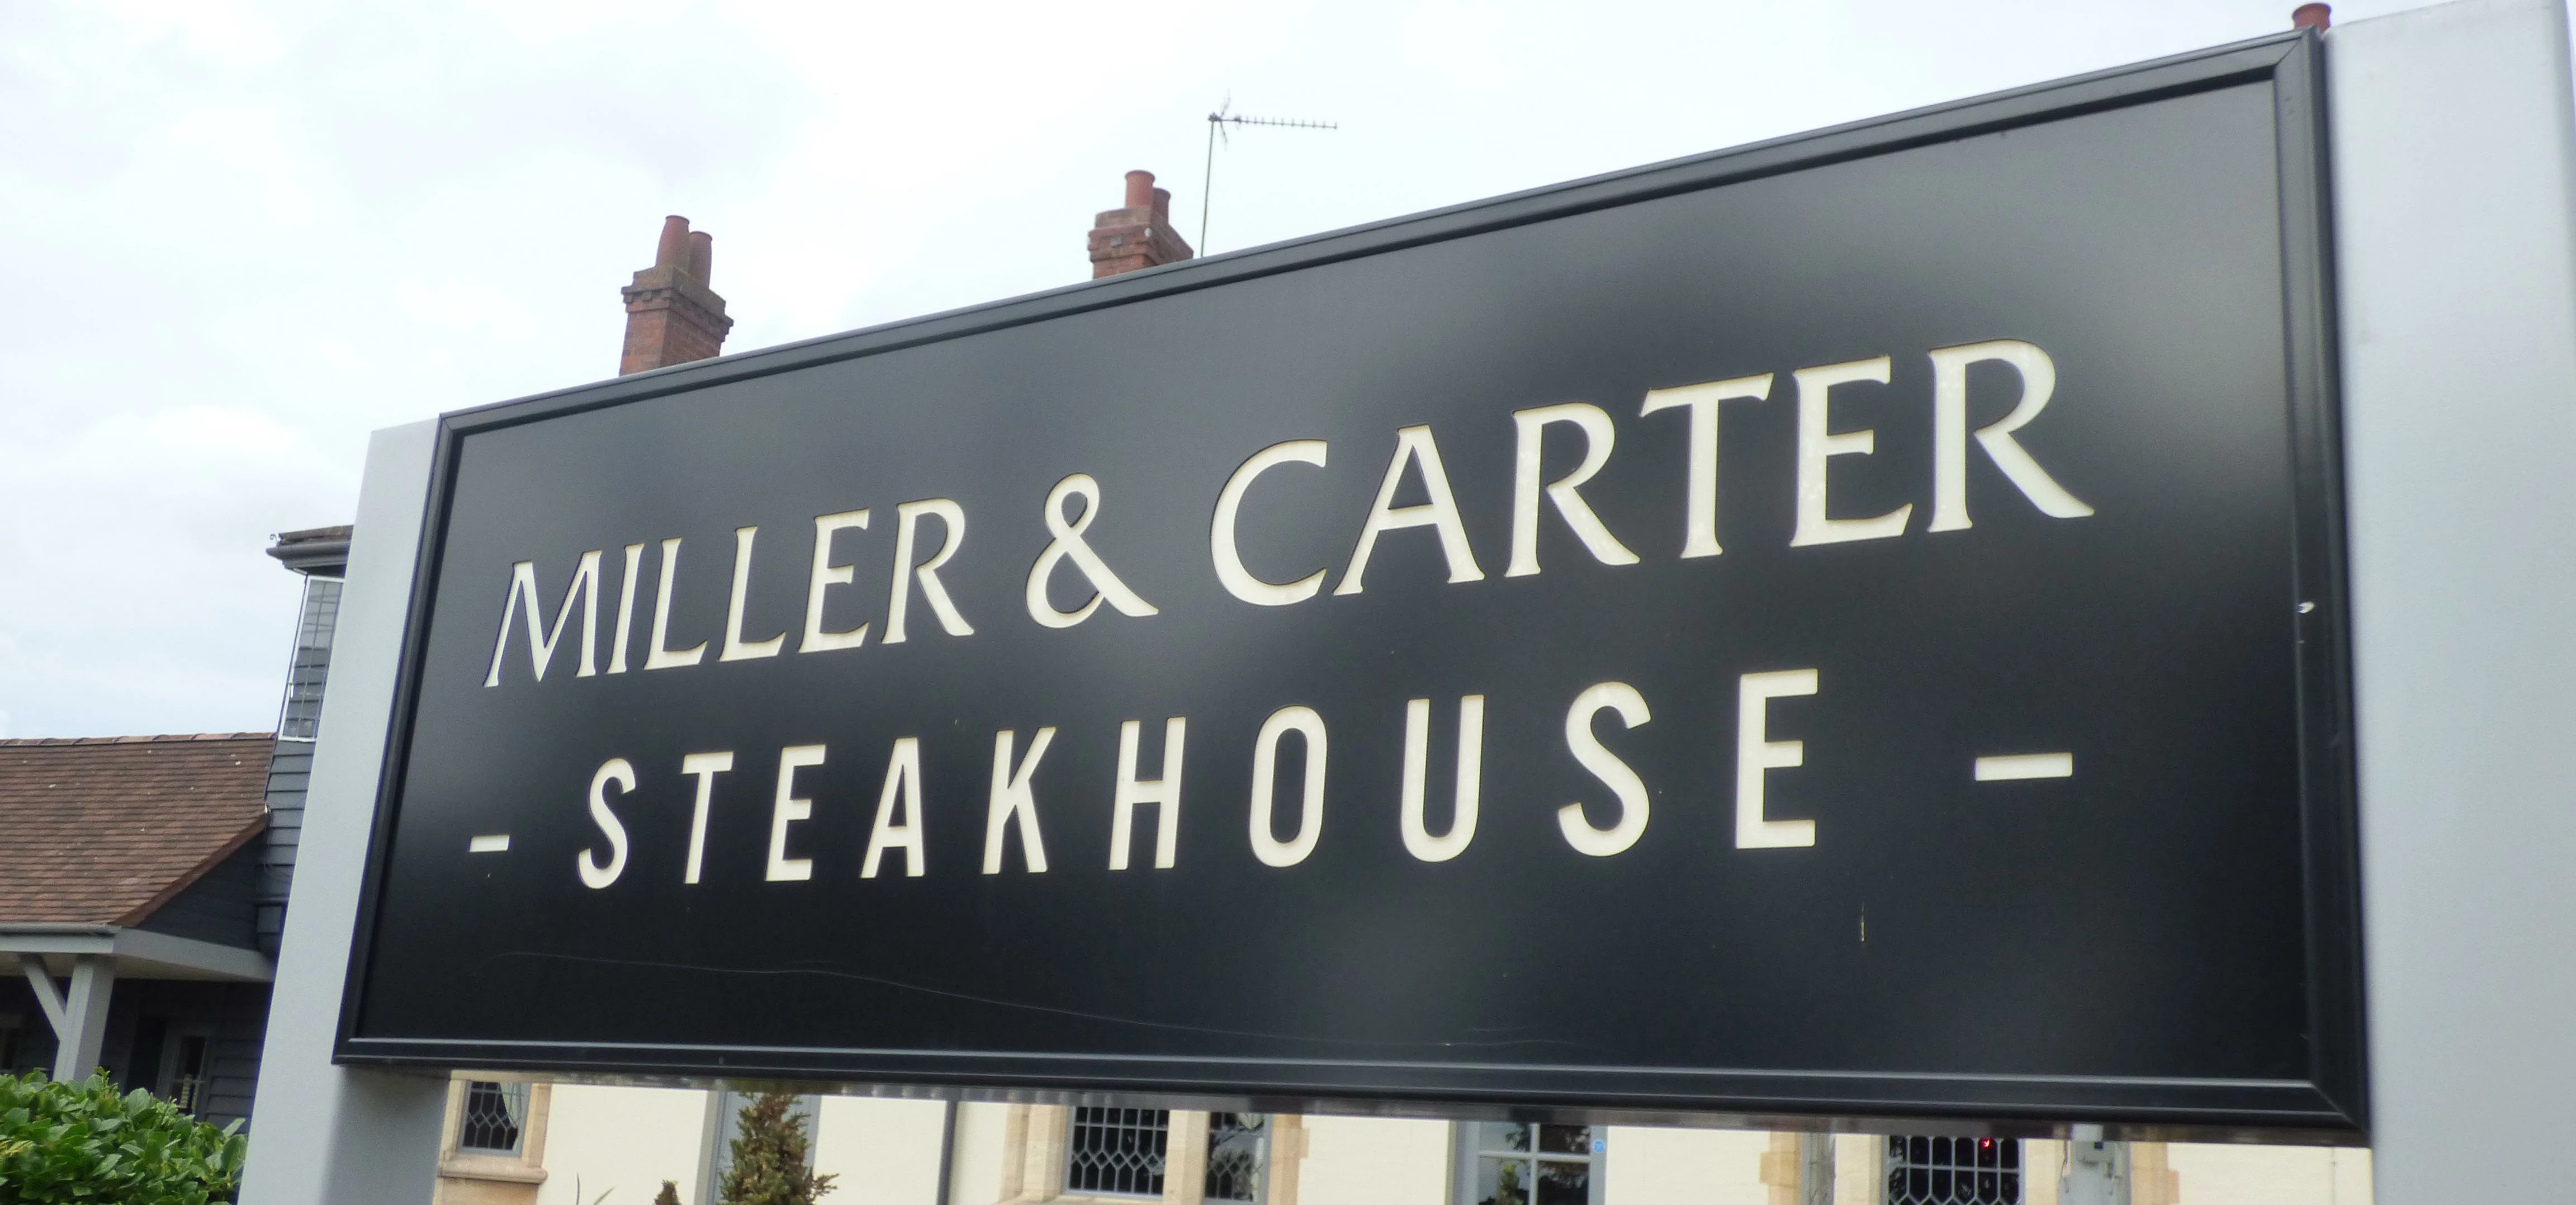 Miller & Carter Steakhouse - Hagley Road West, Bearwood - sign